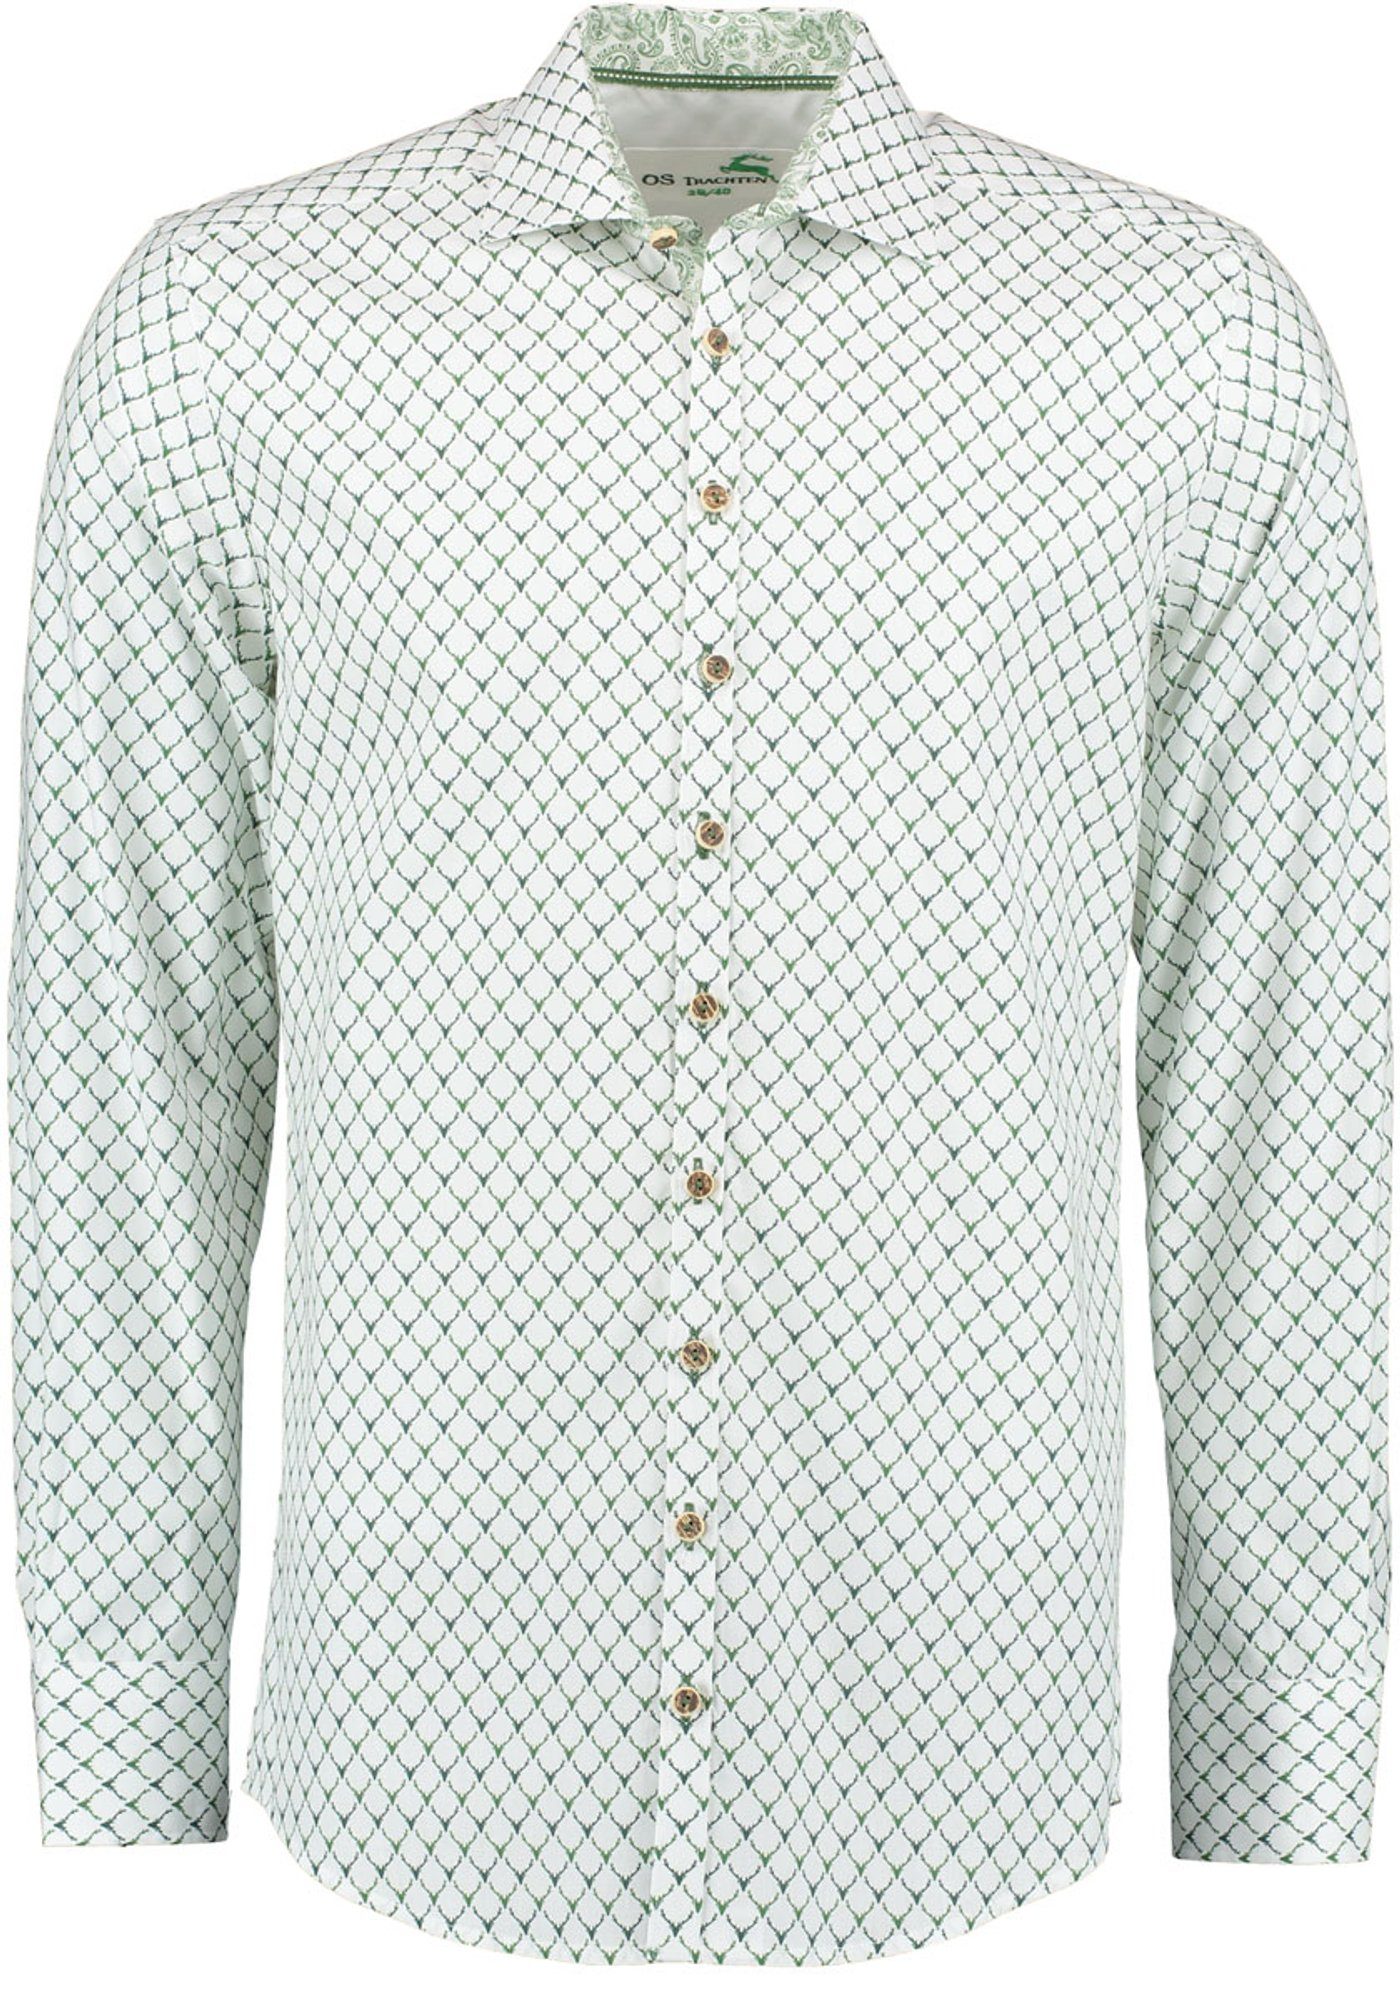 Allover-Druck Trachtenhemd Langarmhemd mit Kedase OS-Trachten dunkelgrün